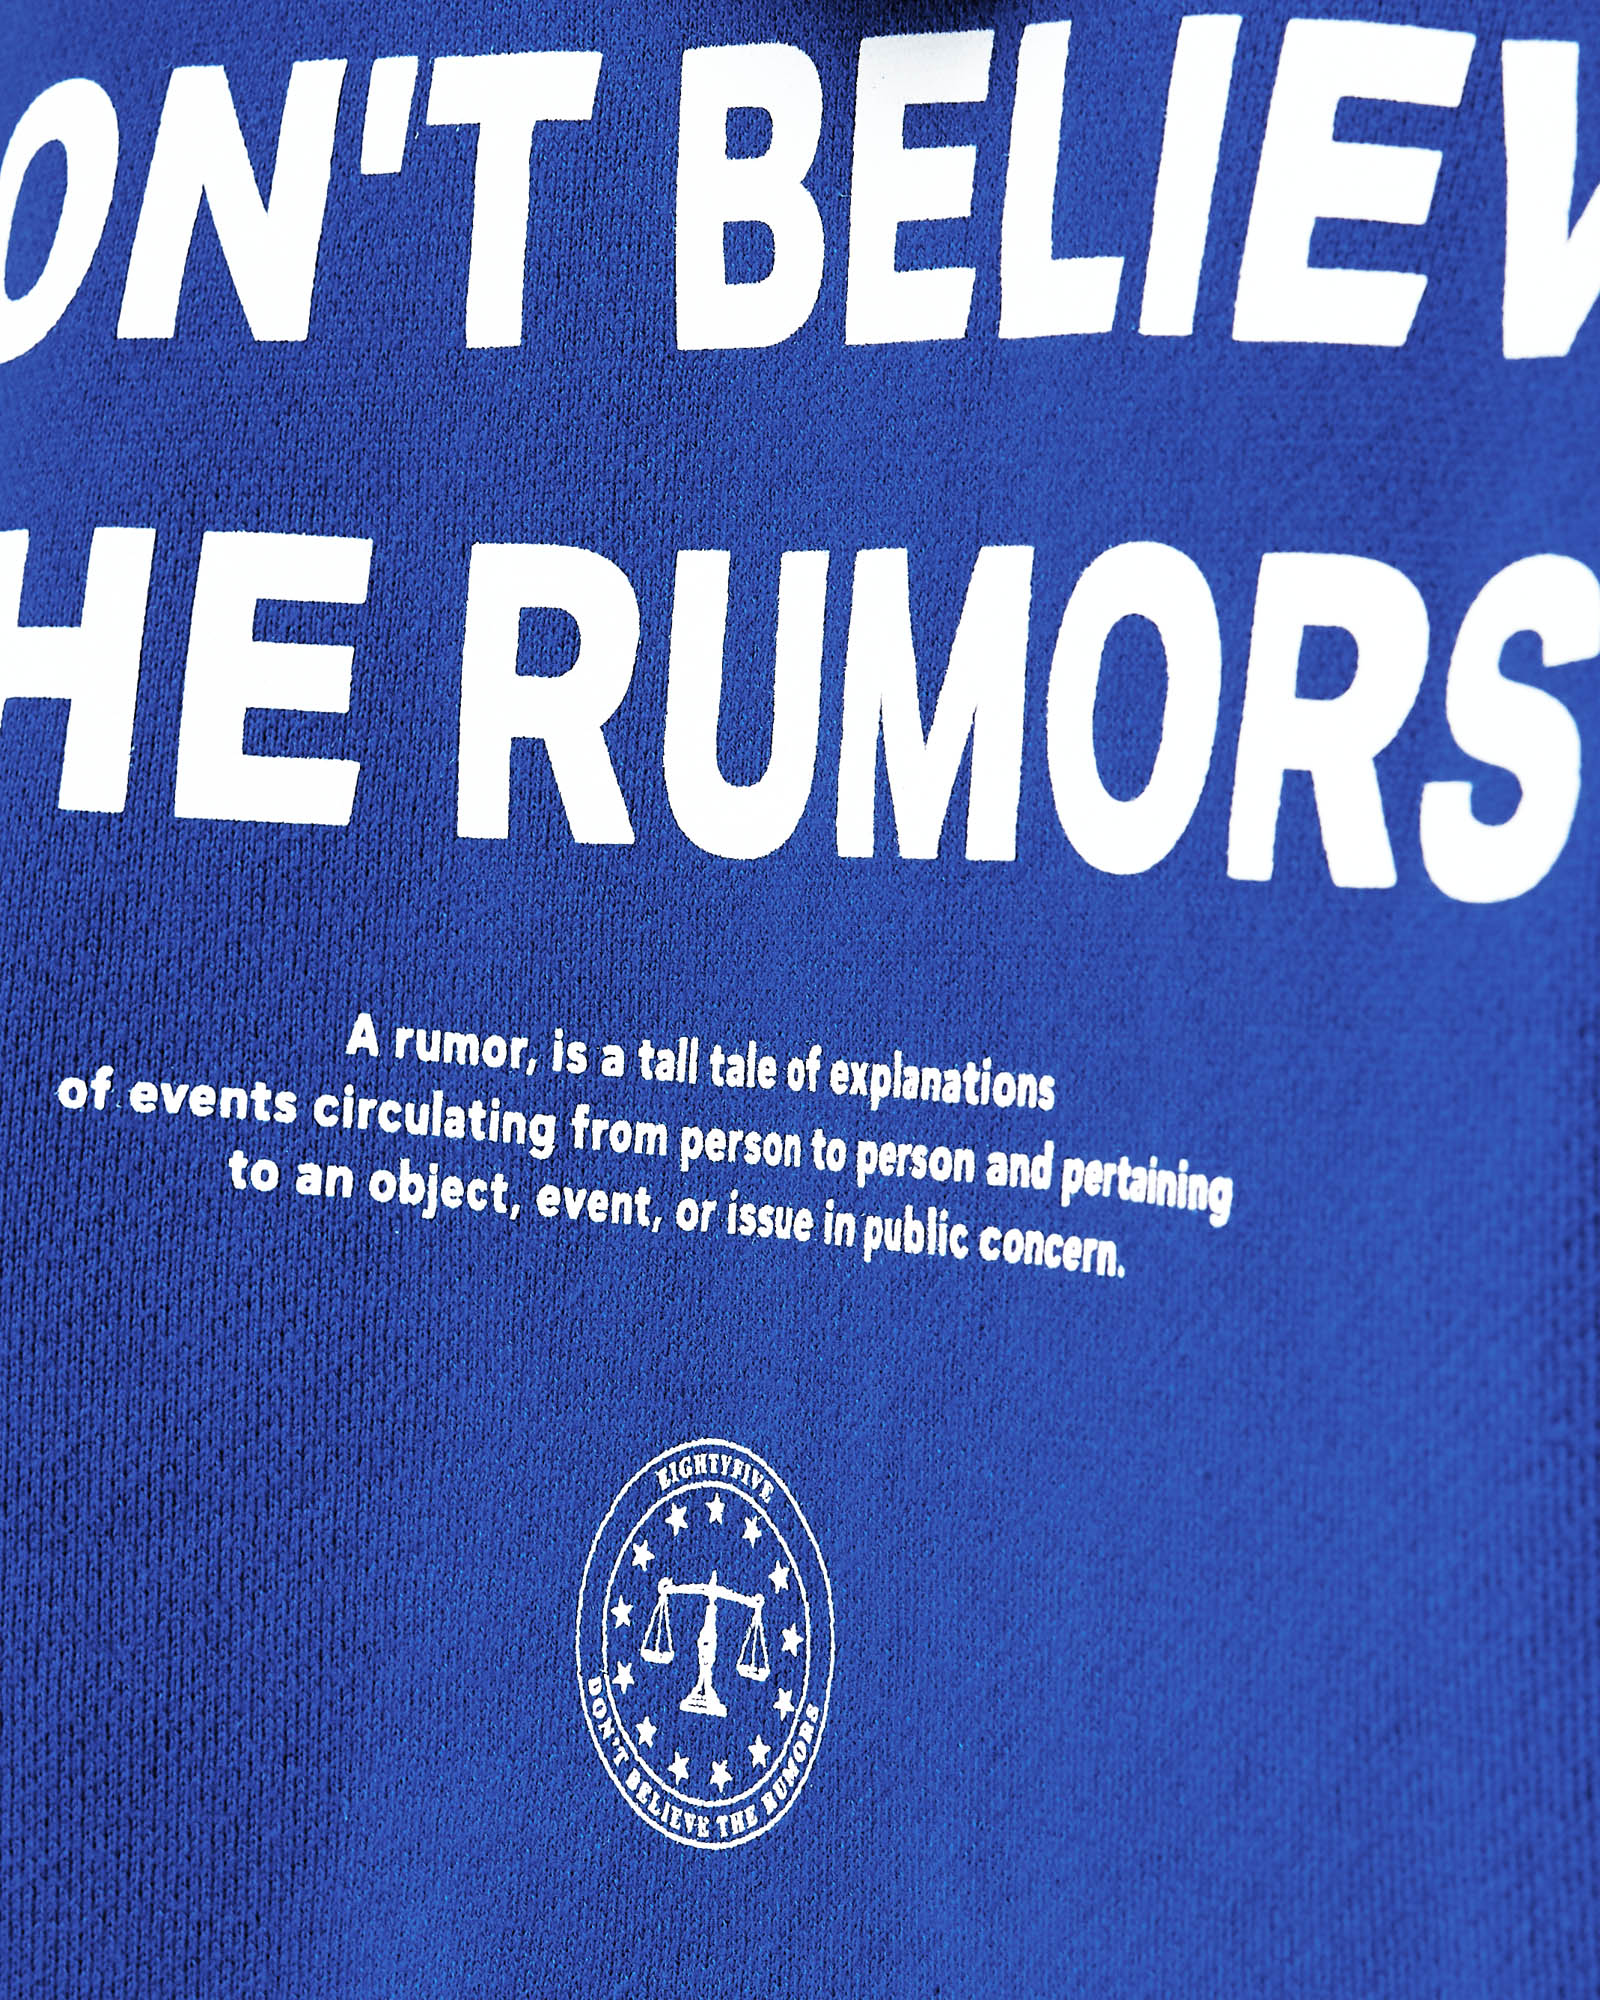 Heavy Rumors T-Shirt